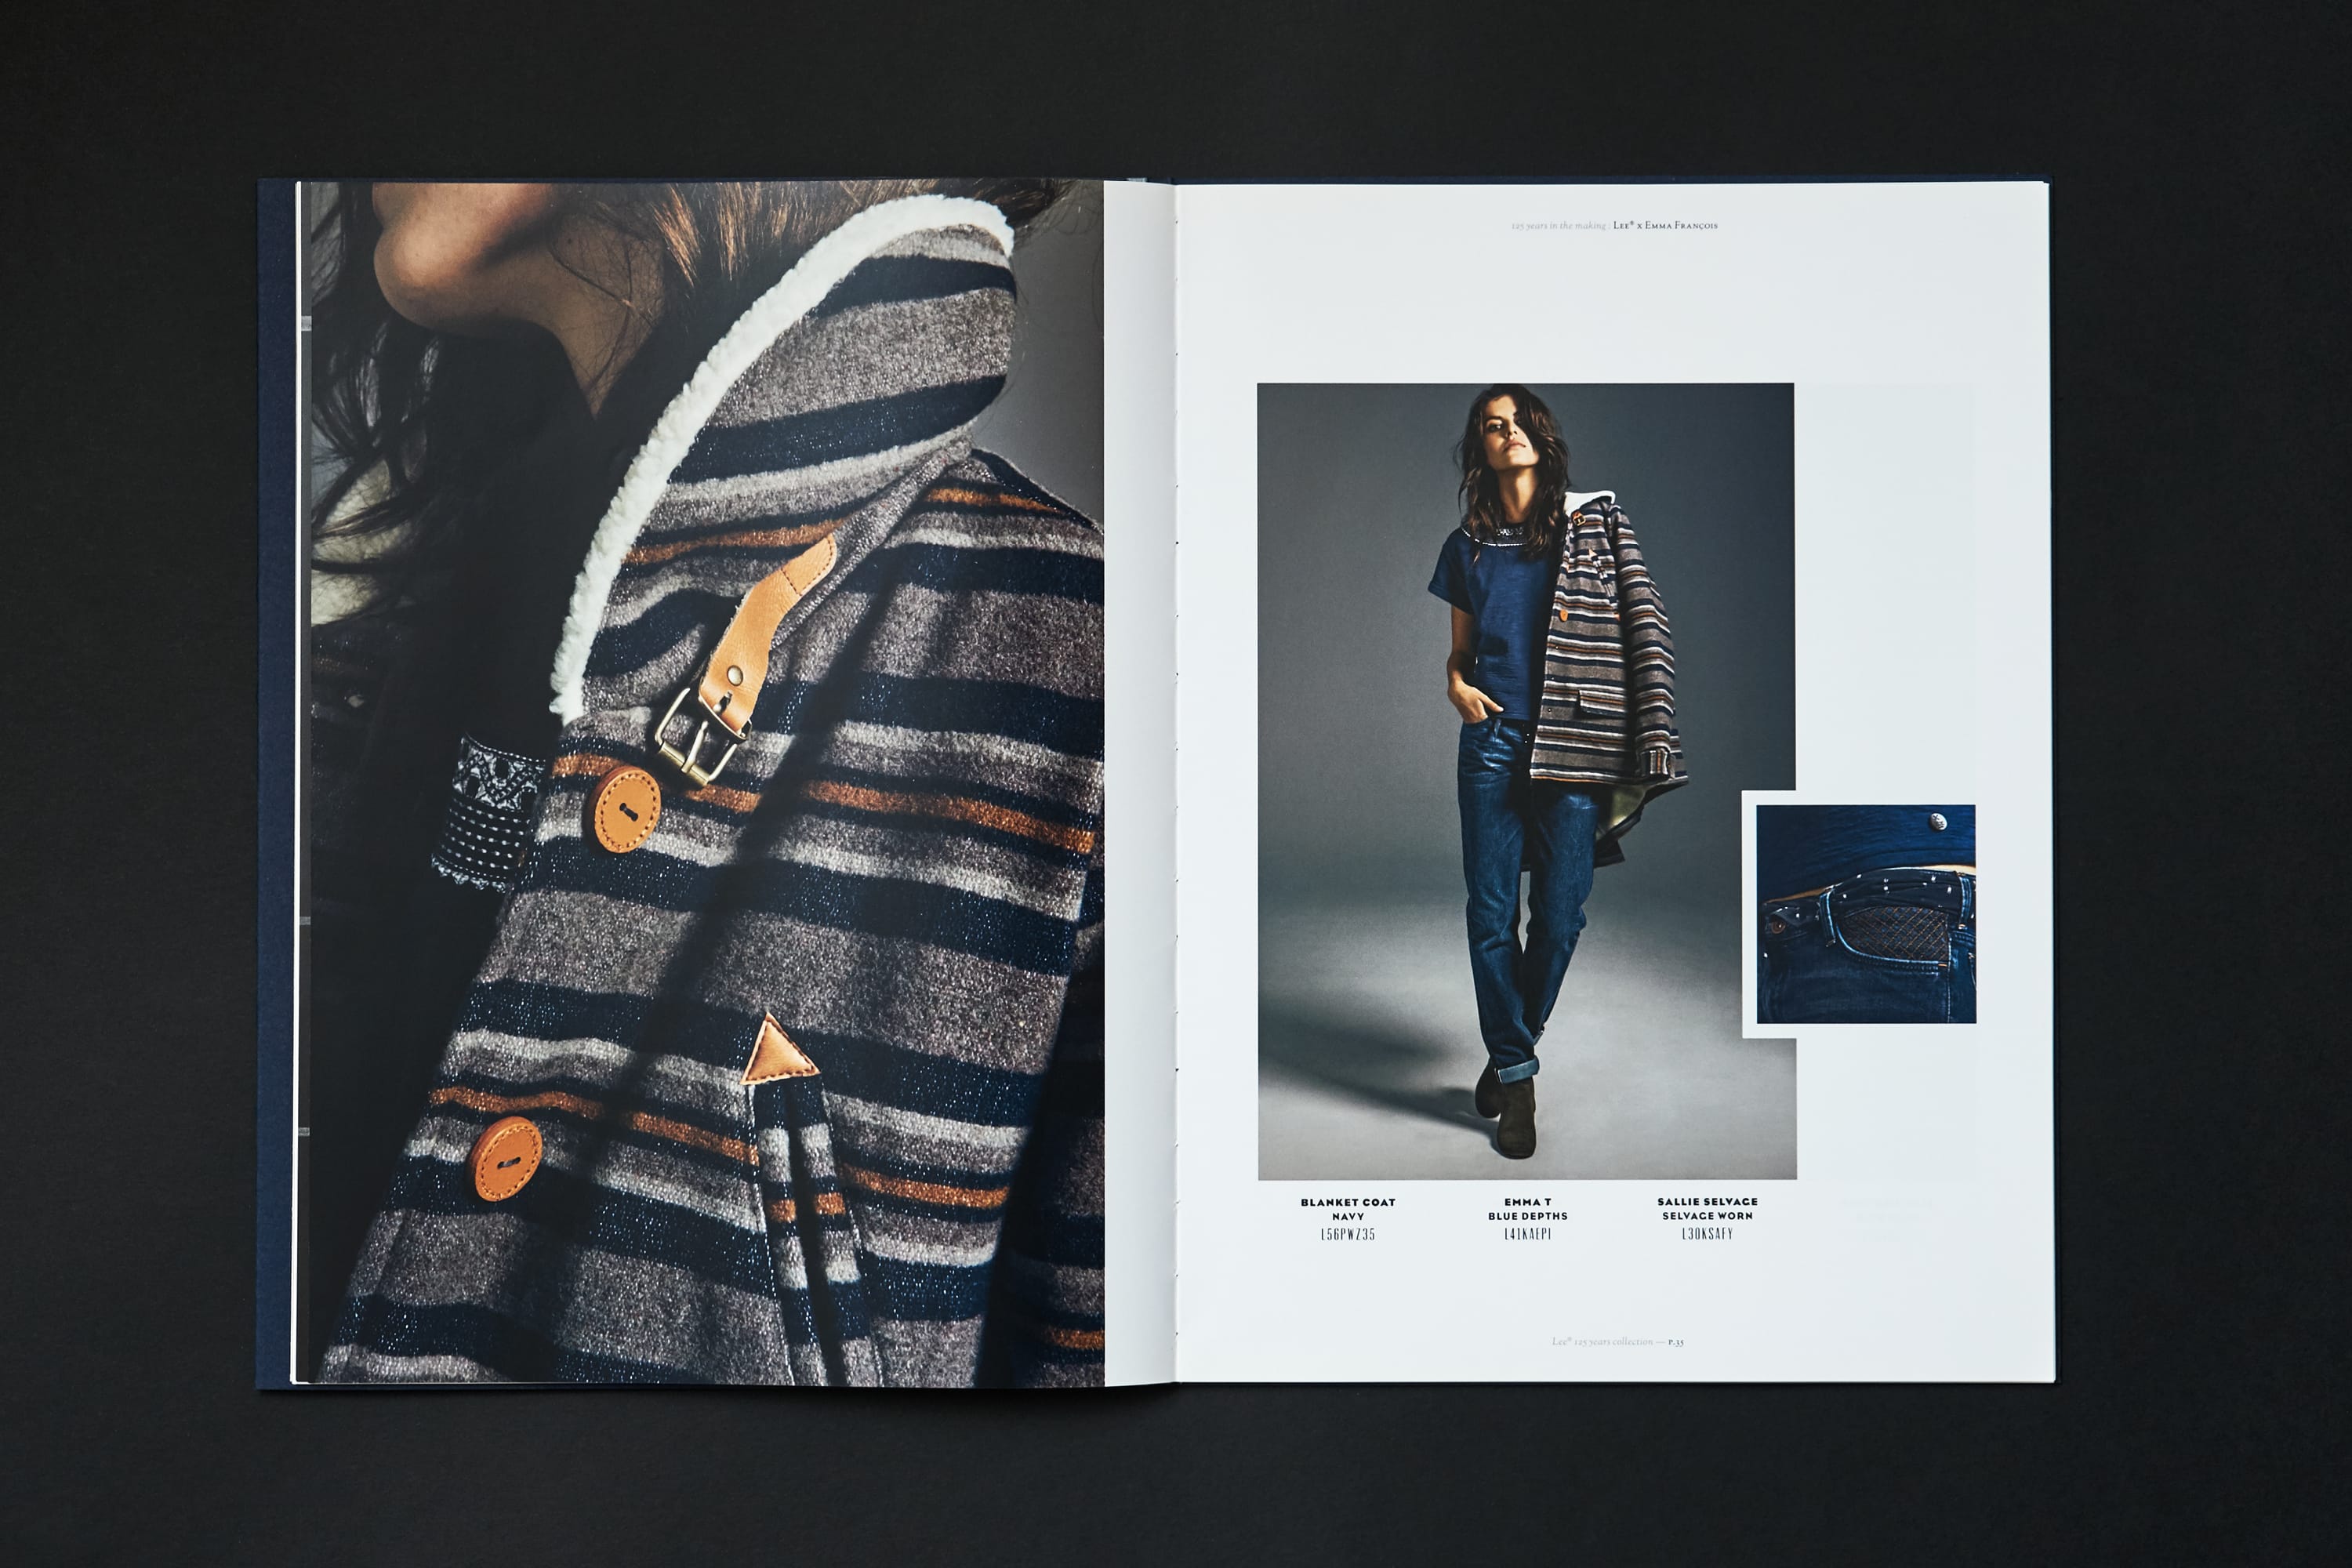 lee-jeans-125-years-branding-catalog-print